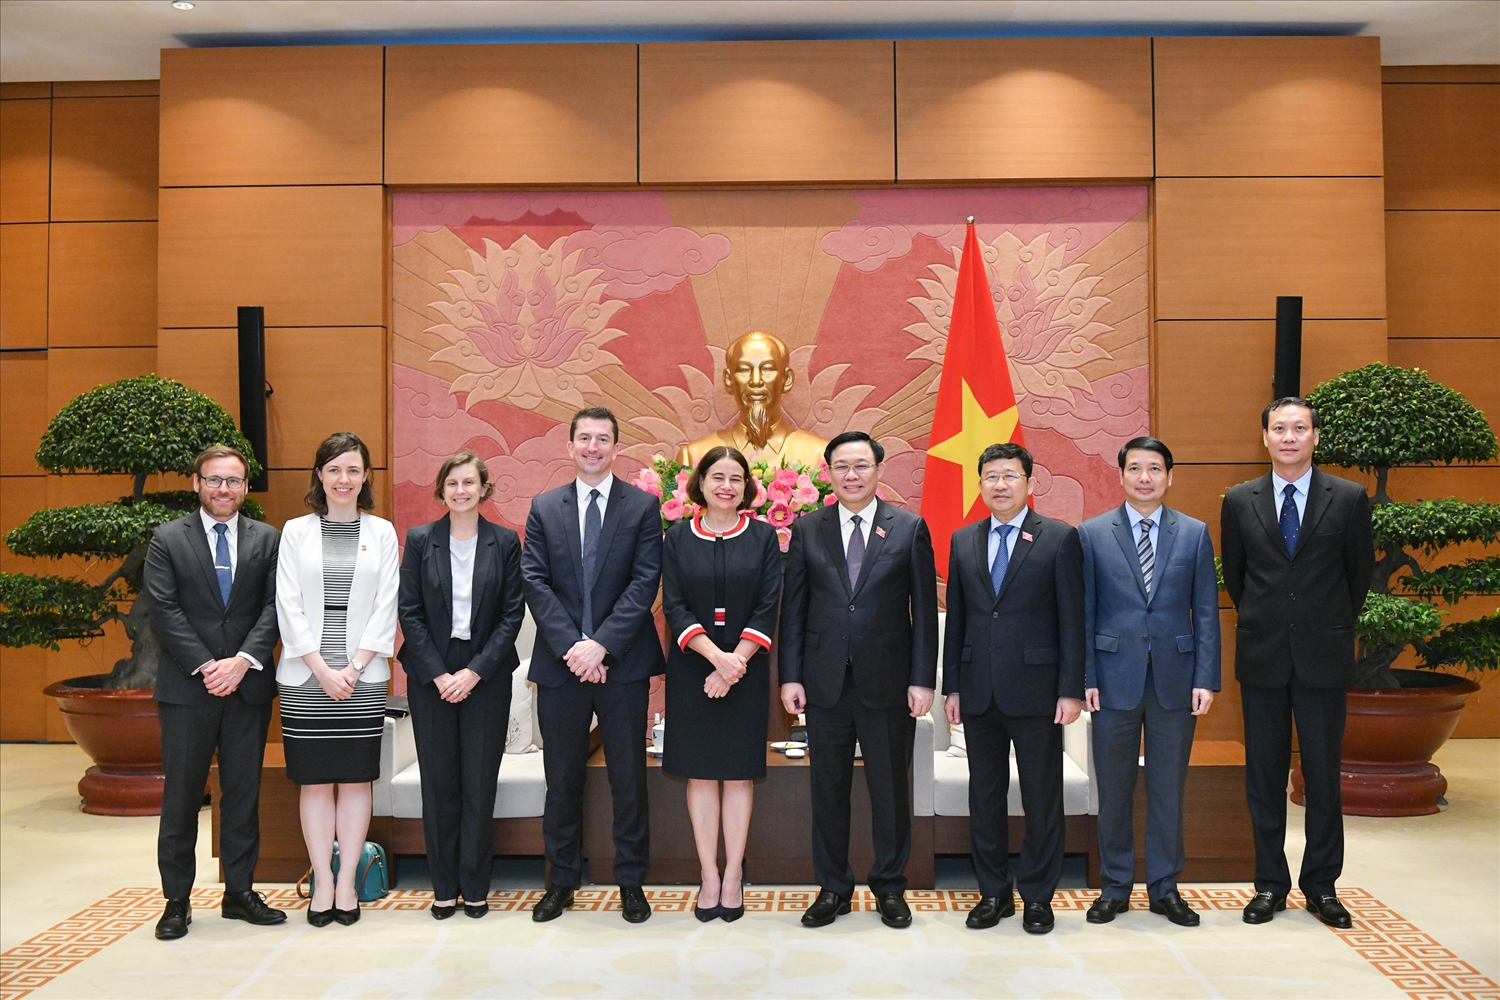 Chủ tịch Quốc hội Vương Đình Huệ chụp ảnh lưu niệm cùng Đại sứ Australia Robyn Mudie và các đại biểu.